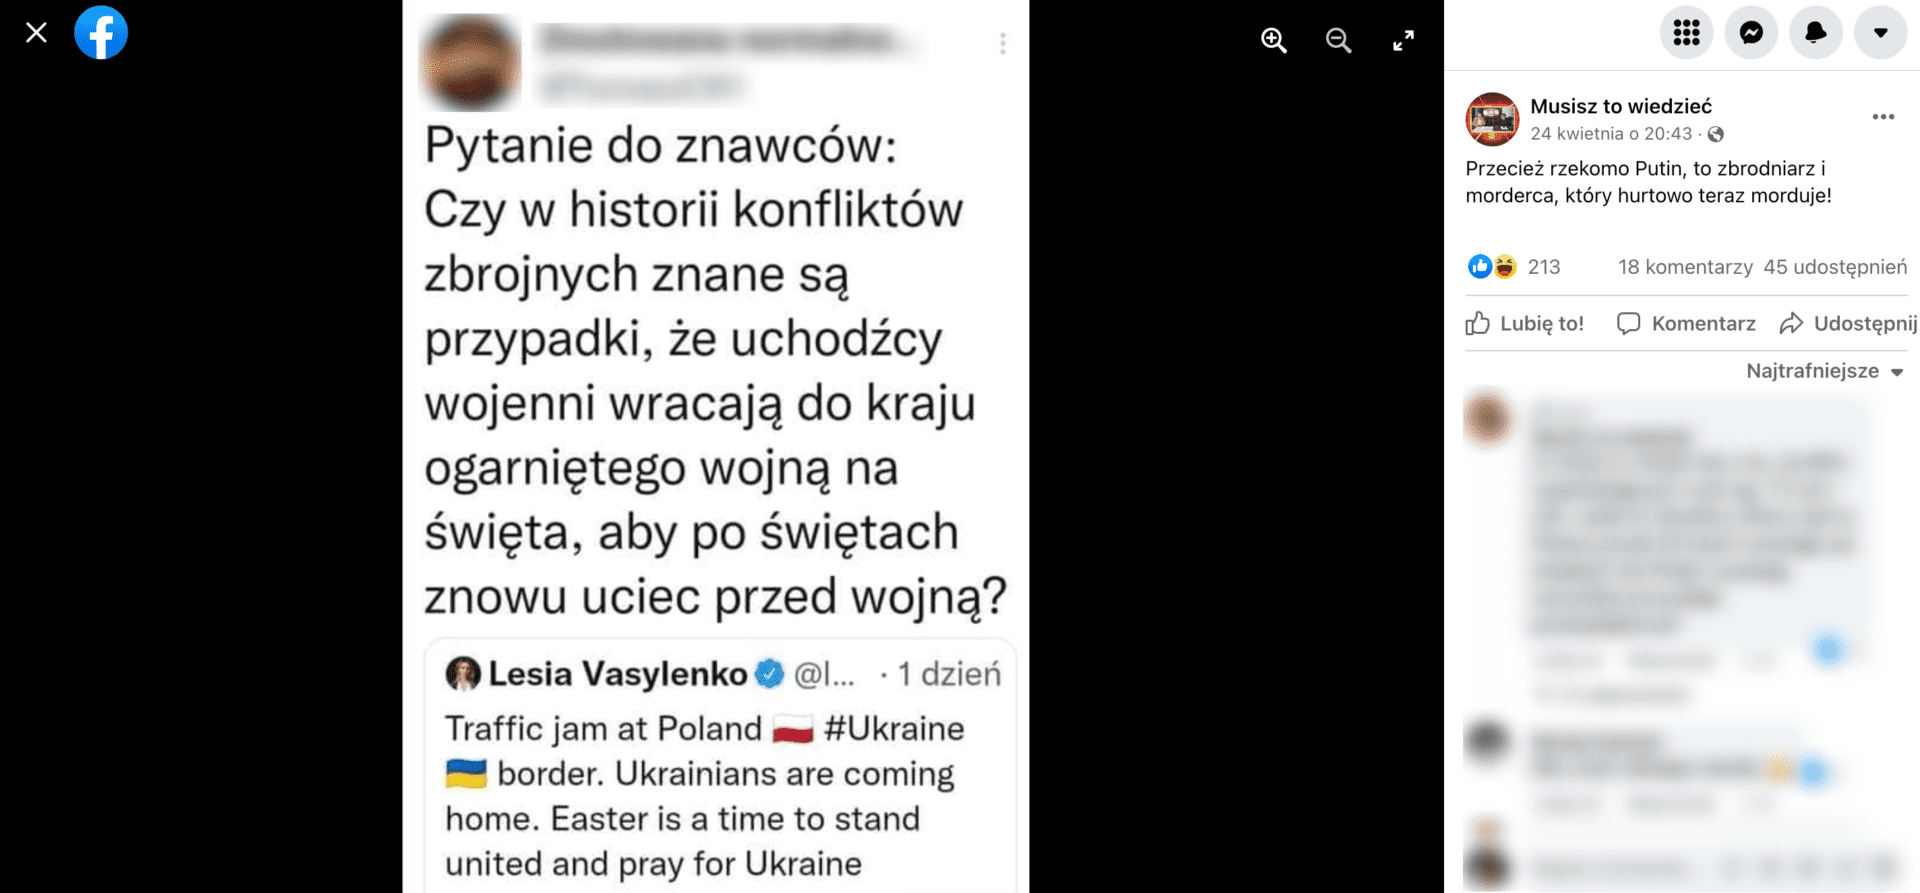 Zrzut ekranu z posta na Facebooku, w którym stwierdzono, że Ukraińcy wracają do domów na święta, aby następnie znów przyjechać do Polski. Wpis zdobył ponad 200 reakcji i ponad 40 udostępnień.